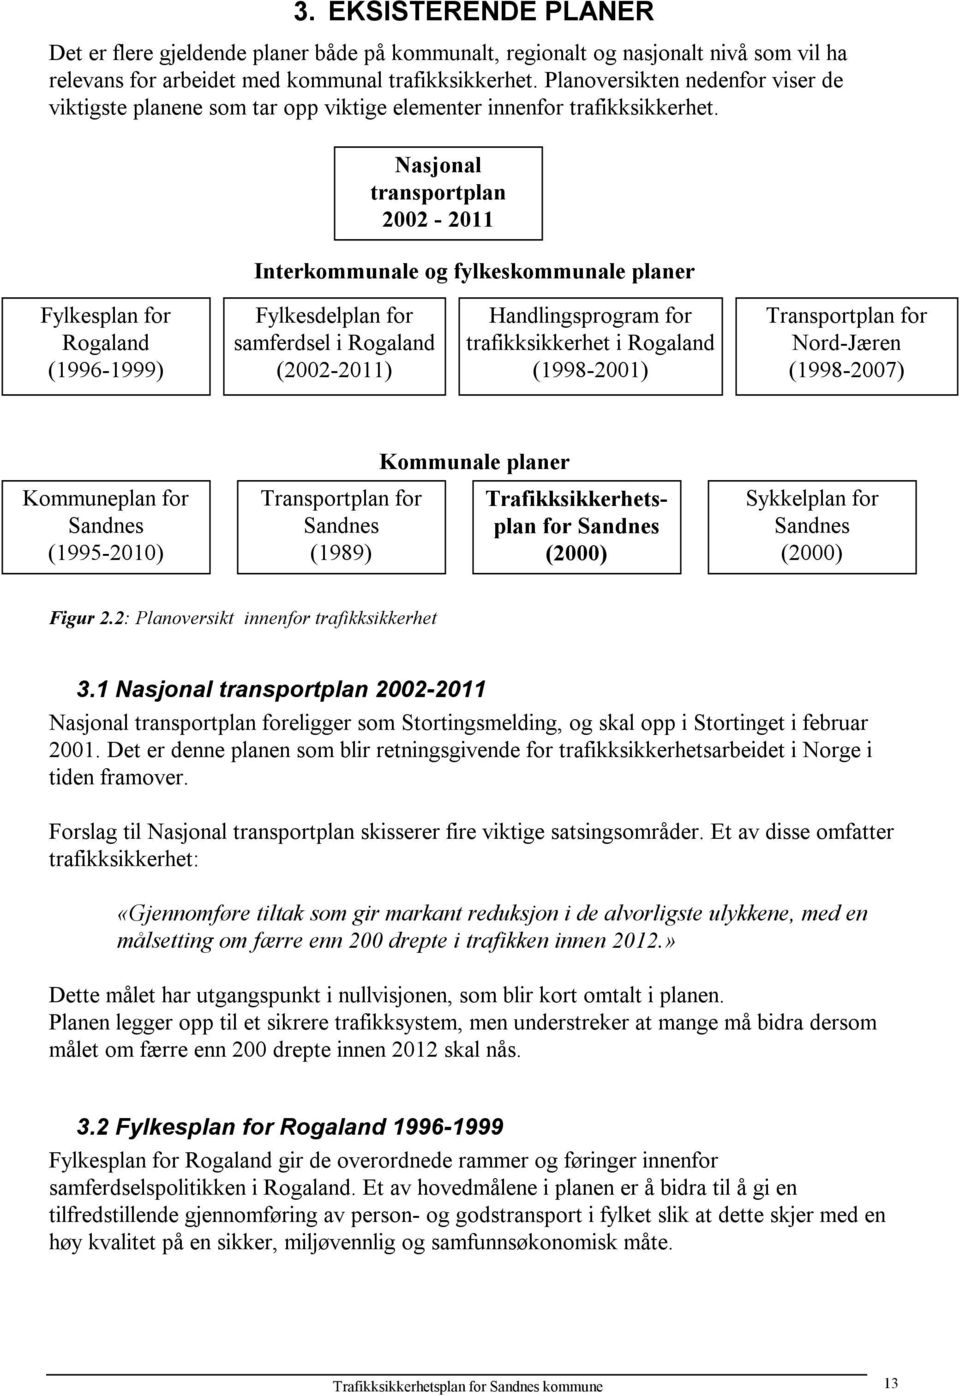 Nasjonal transportplan 2002-2011 Interkommunale og fylkeskommunale planer Fylkesplan for Rogaland (1996-1999) Fylkesdelplan for samferdsel i Rogaland (2002-2011) Handlingsprogram for trafikksikkerhet